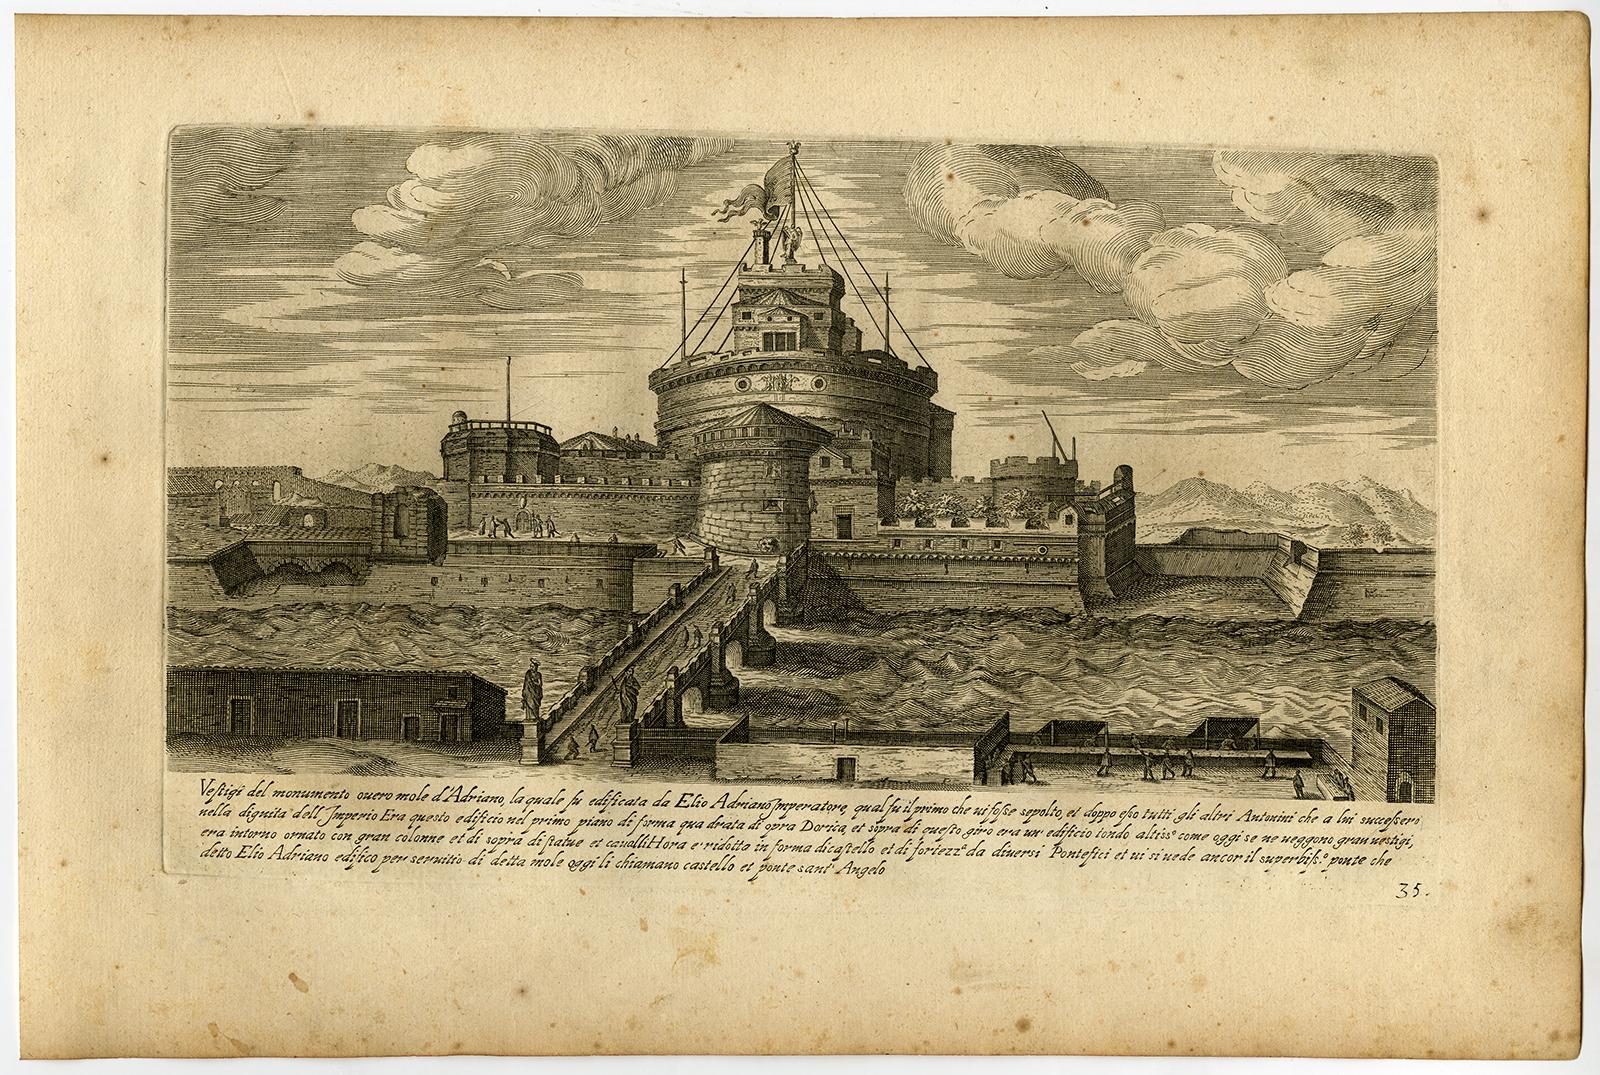 Aegidius Sadeler Landscape Print - Vestigii del Monumento over mole d'Adriano […].